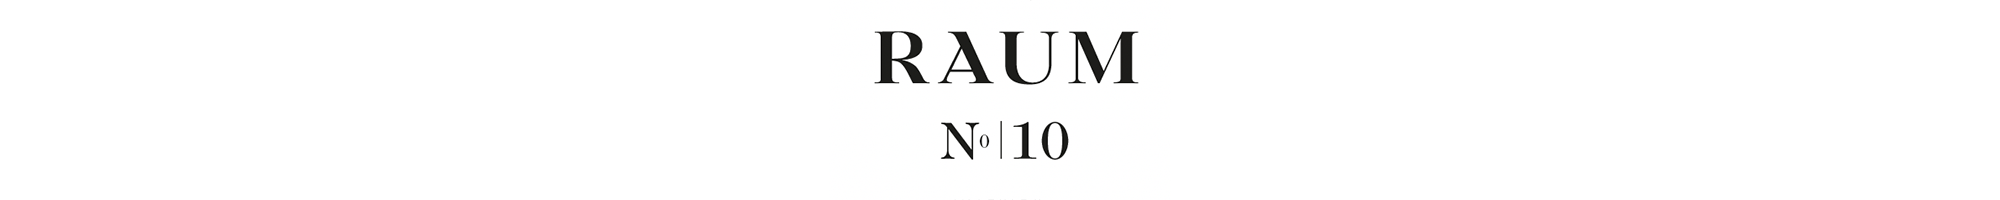 Hier das Logo von RAUM und N0|10 - RAUM concept store